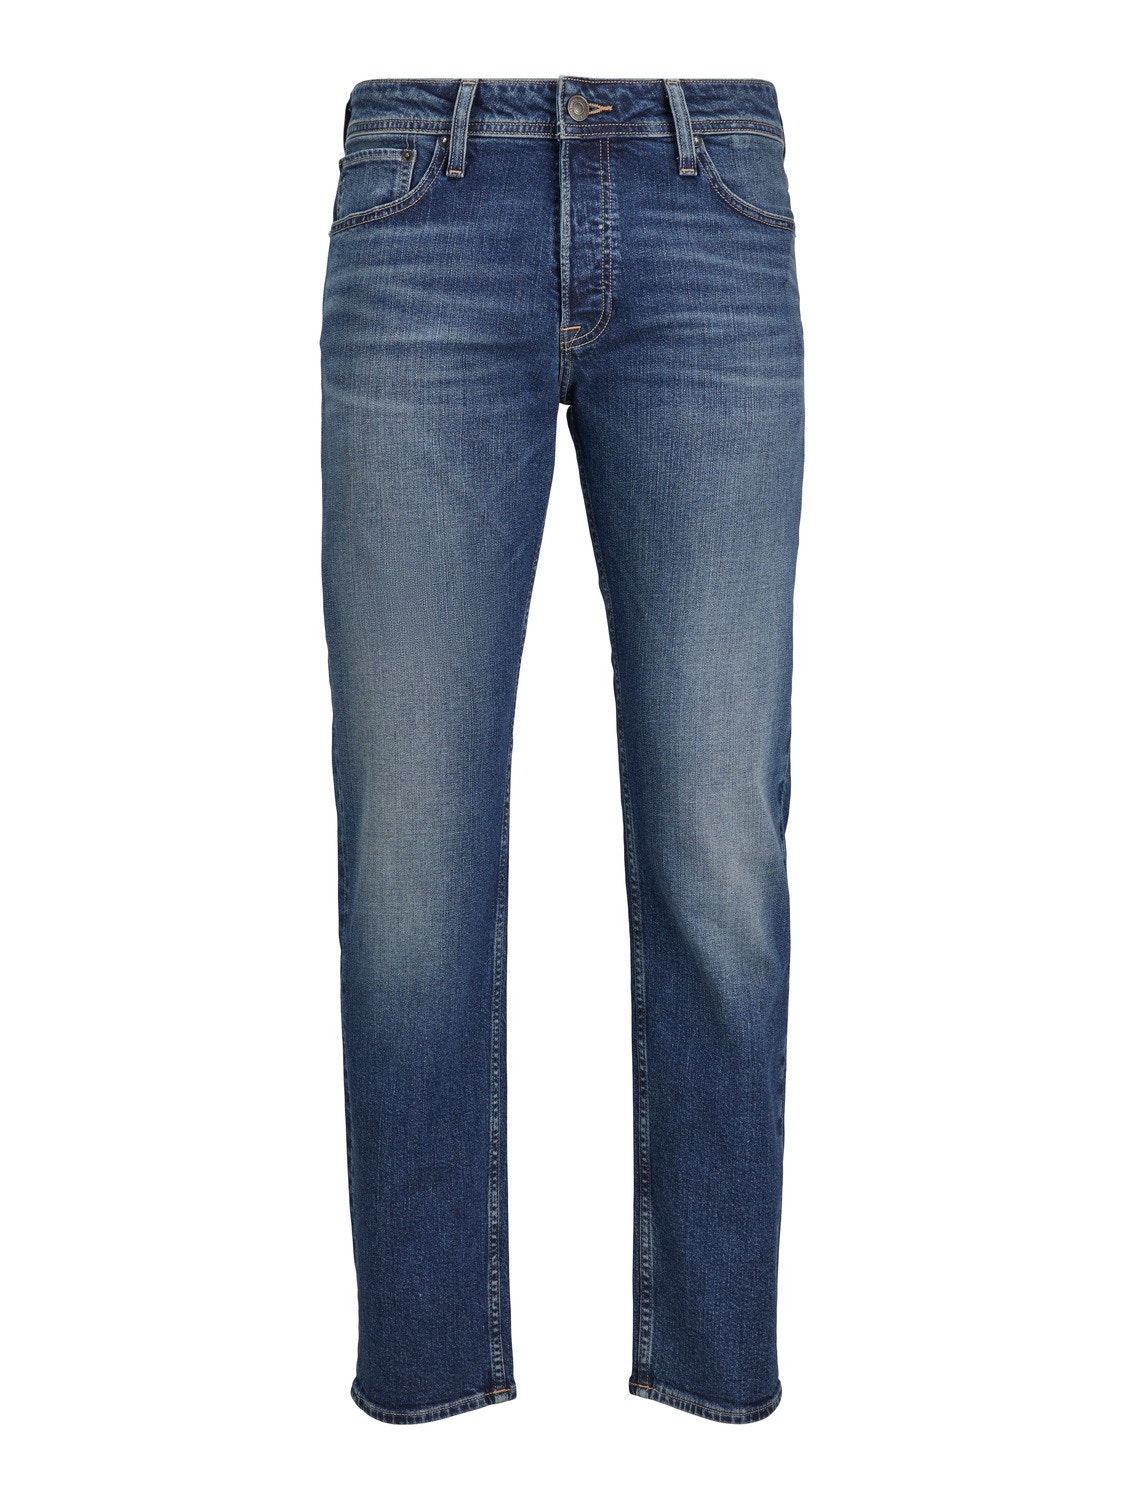 Jack & Jones Plus Size JJIMIKE JJORIGINAL CB 010 PLS Tapered fit jeans -Blue Denim - 12252027